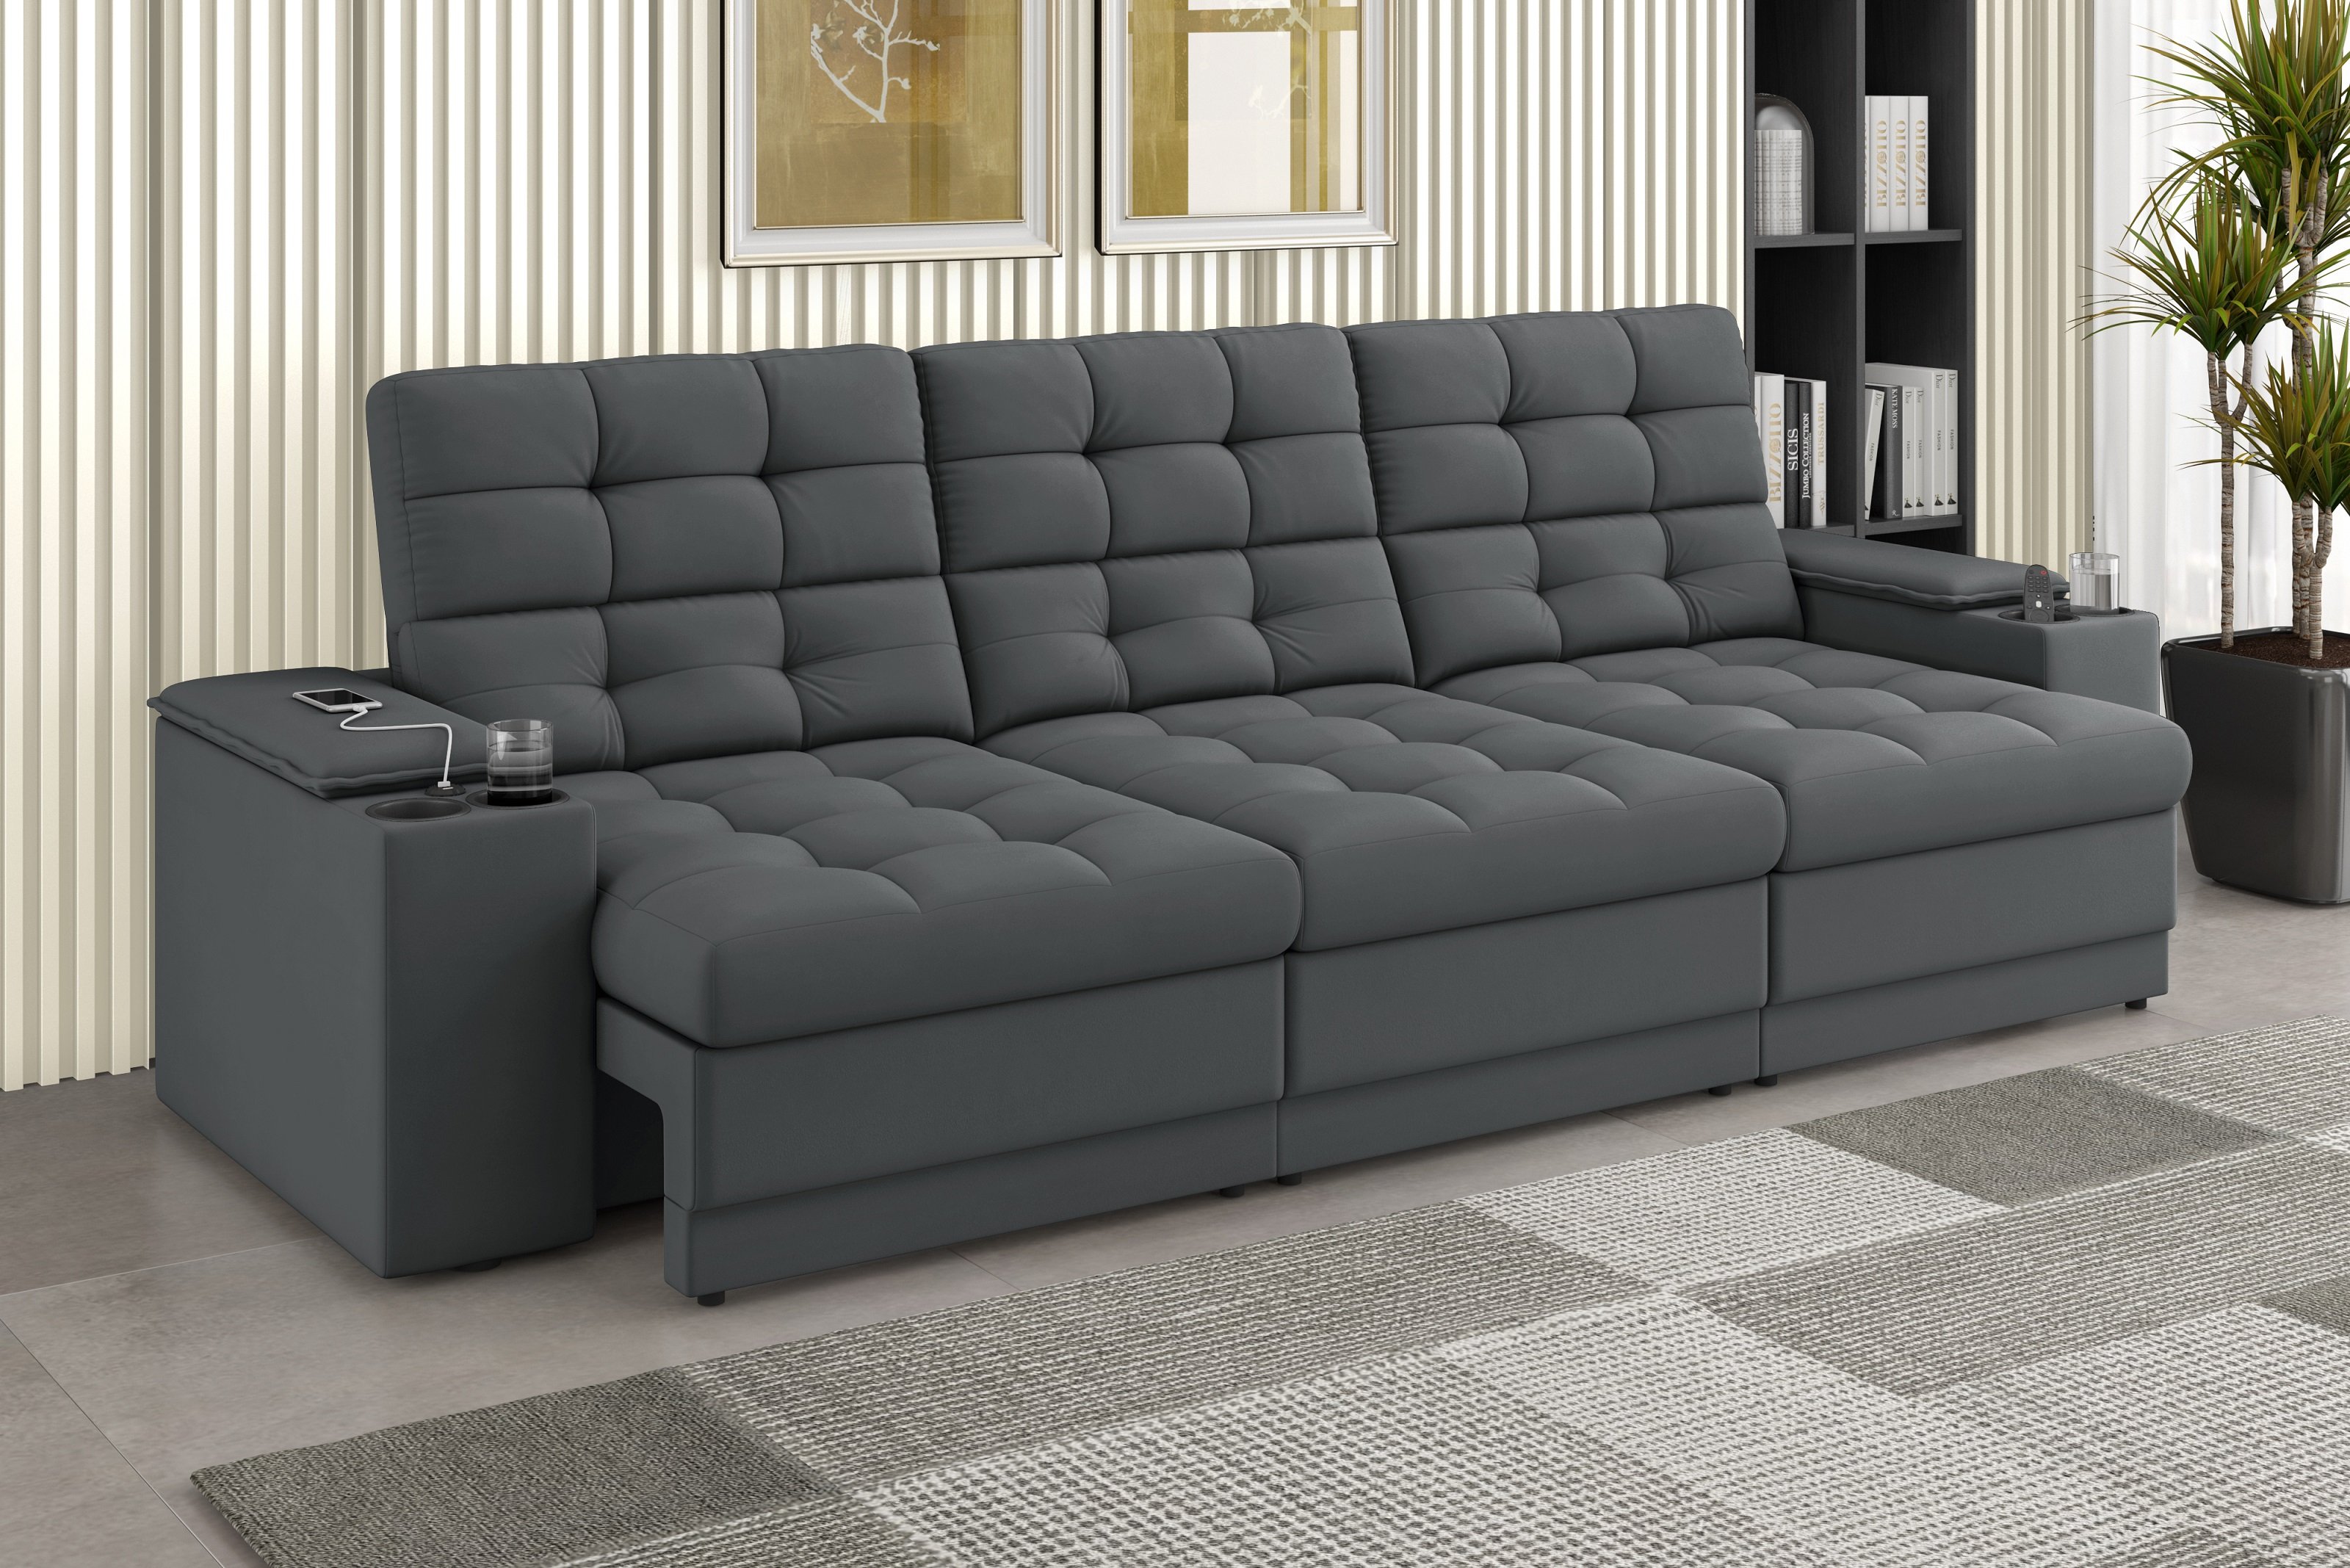 Sofá Confort Premium 2,30m Assento Retrátil/reclinável Porta Copos e Usb Suede Cinza - Xflex - 1